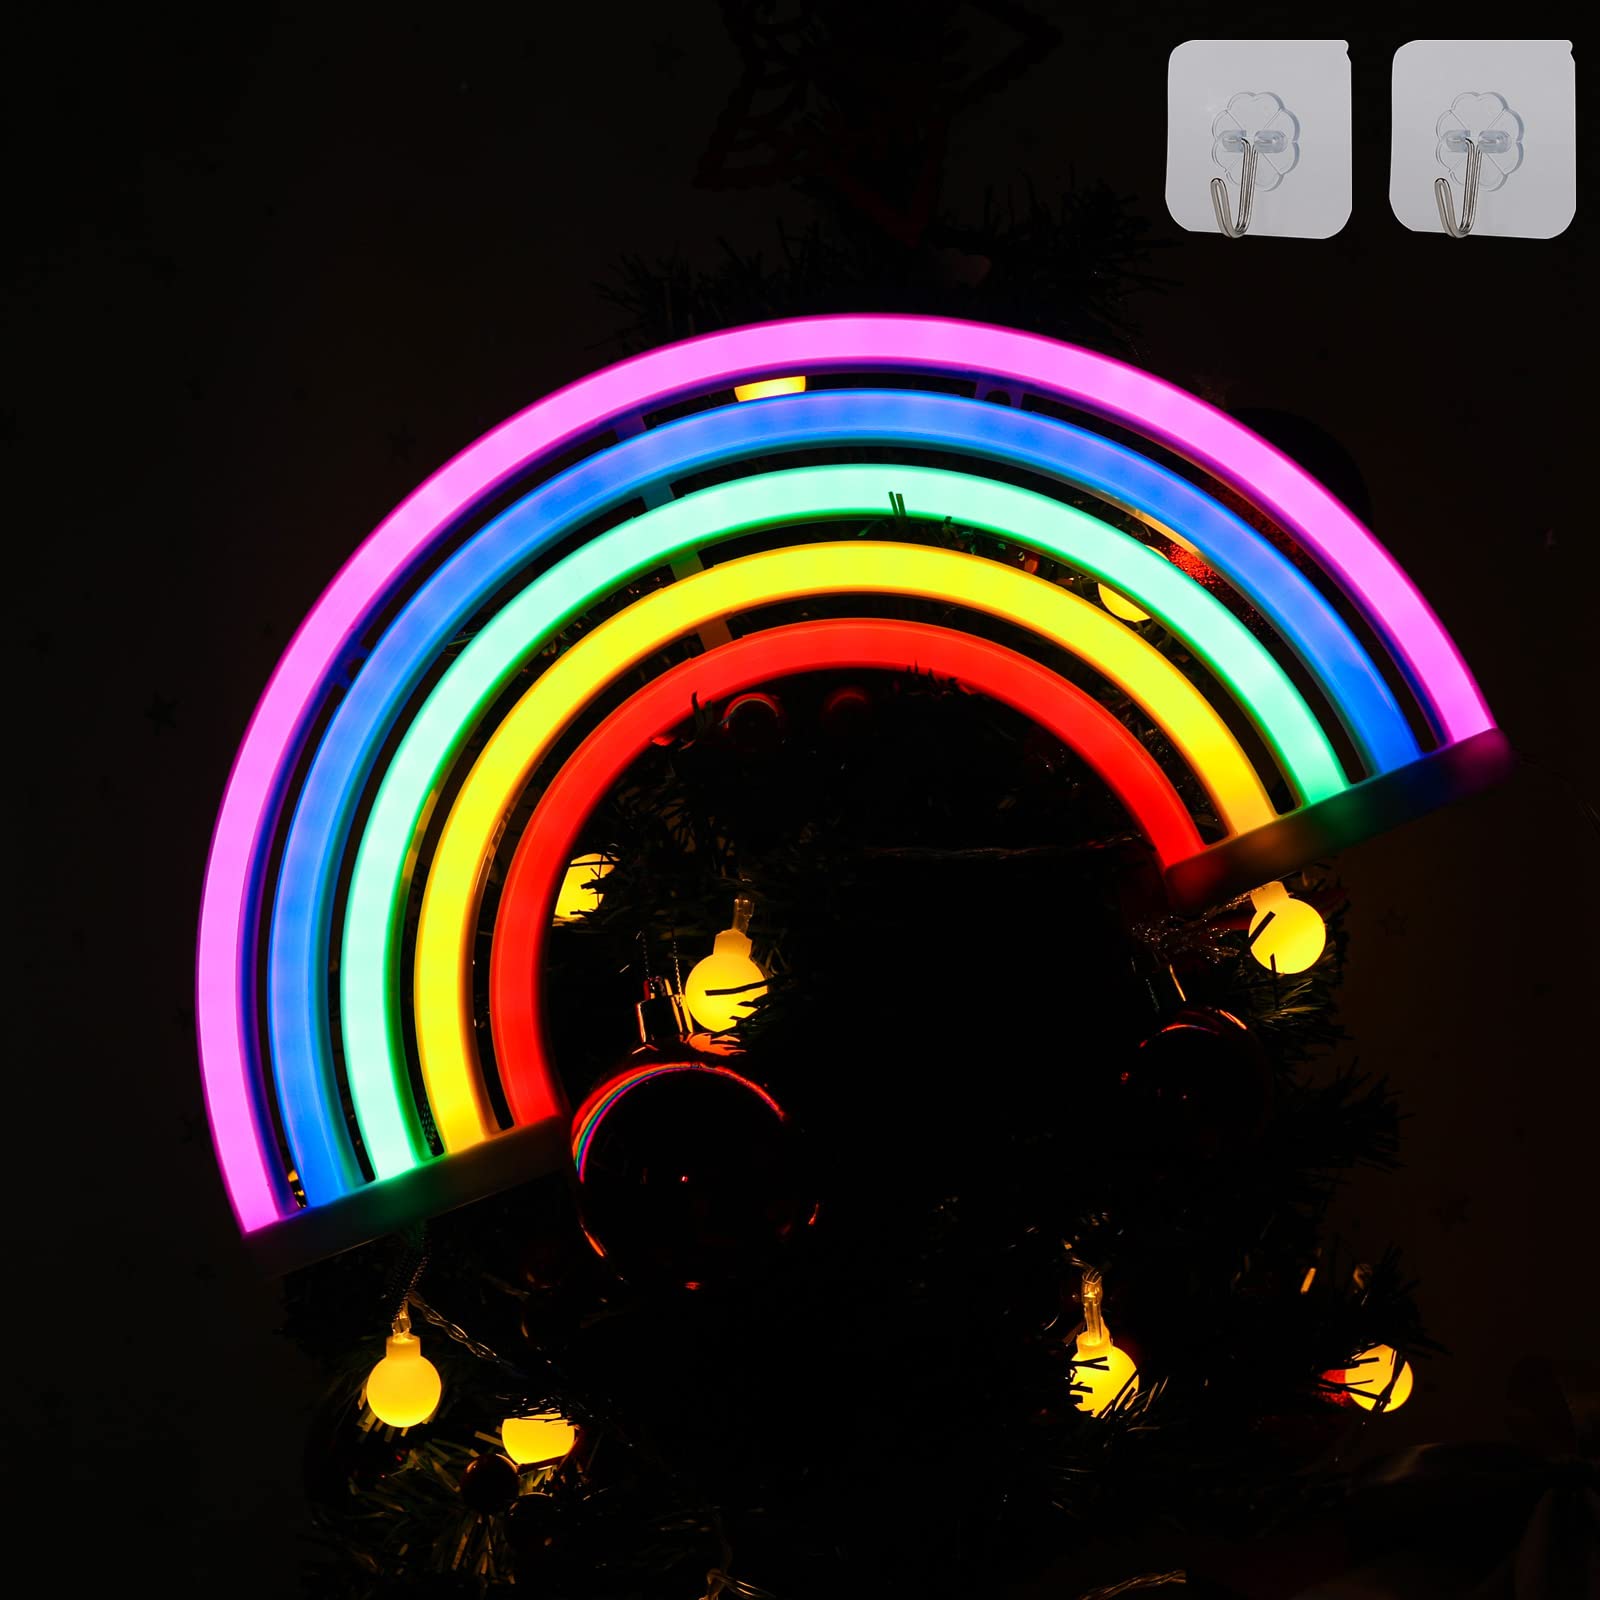  Regenbogen Hintergrundbild 1600x1600. ENUOLI Regenbogen Neonlicht, Niedliche Bunte Neon Regenbogen Schilder, Batteriebetrieben Oder USB Betrieben, LED Regenbogen Licht, Nachtlicht, Weihnachten, Festival : Amazon.de: Beleuchtung